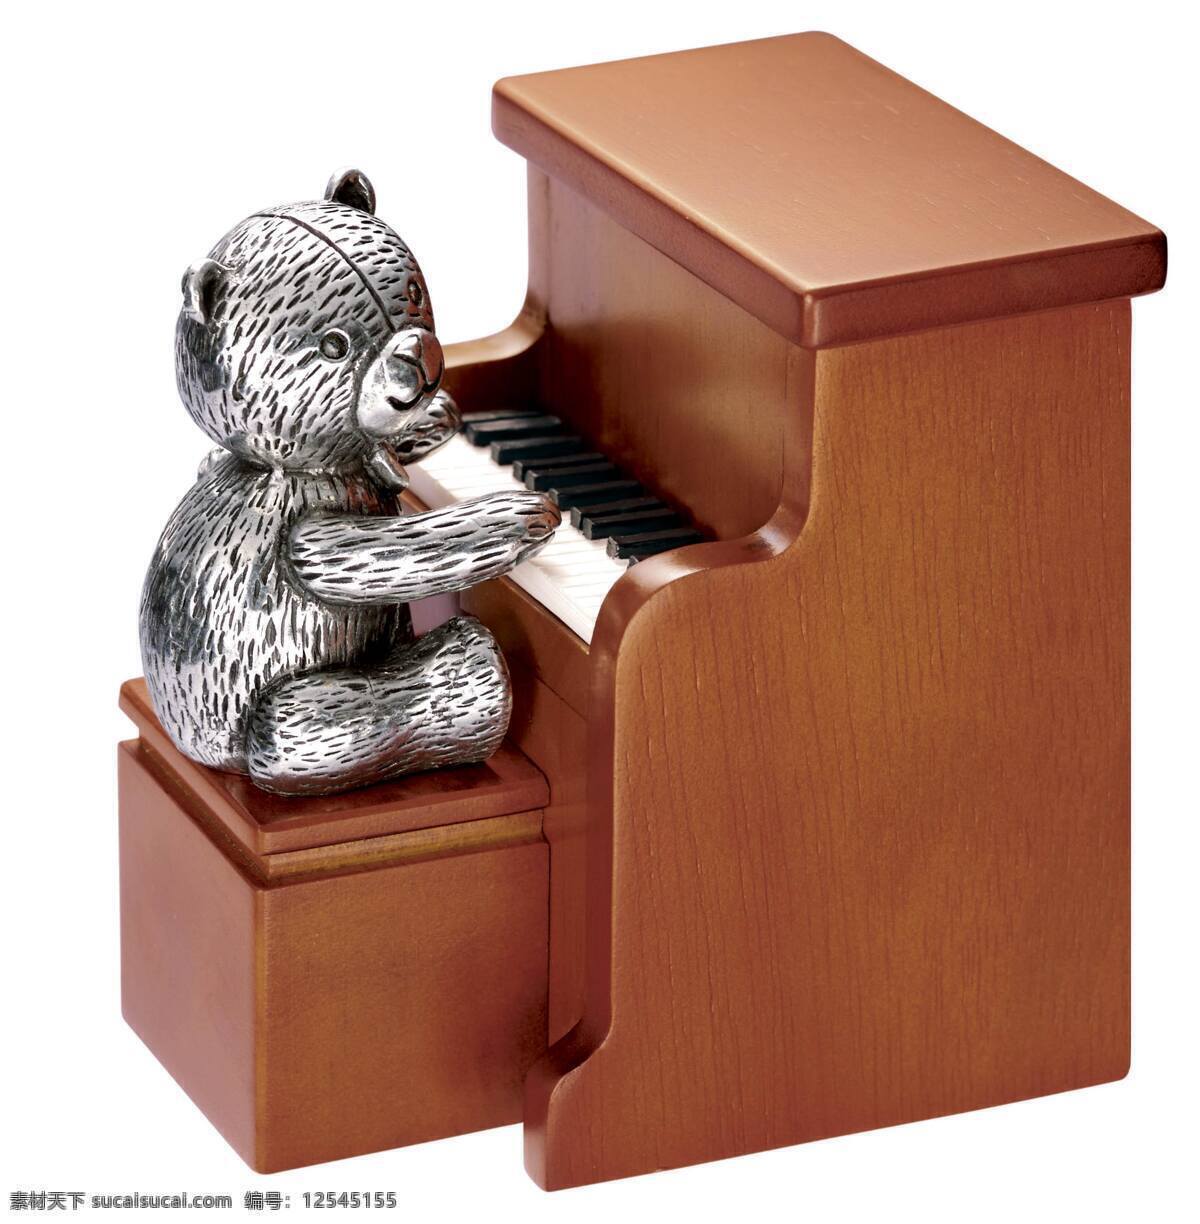 弹钢琴 生活百科 生活素材 生活用品 小熊 音乐盒 八音盒 小熊弹钢琴 简易音乐物 摆设件 玩物类 生活用品之一 psd源文件